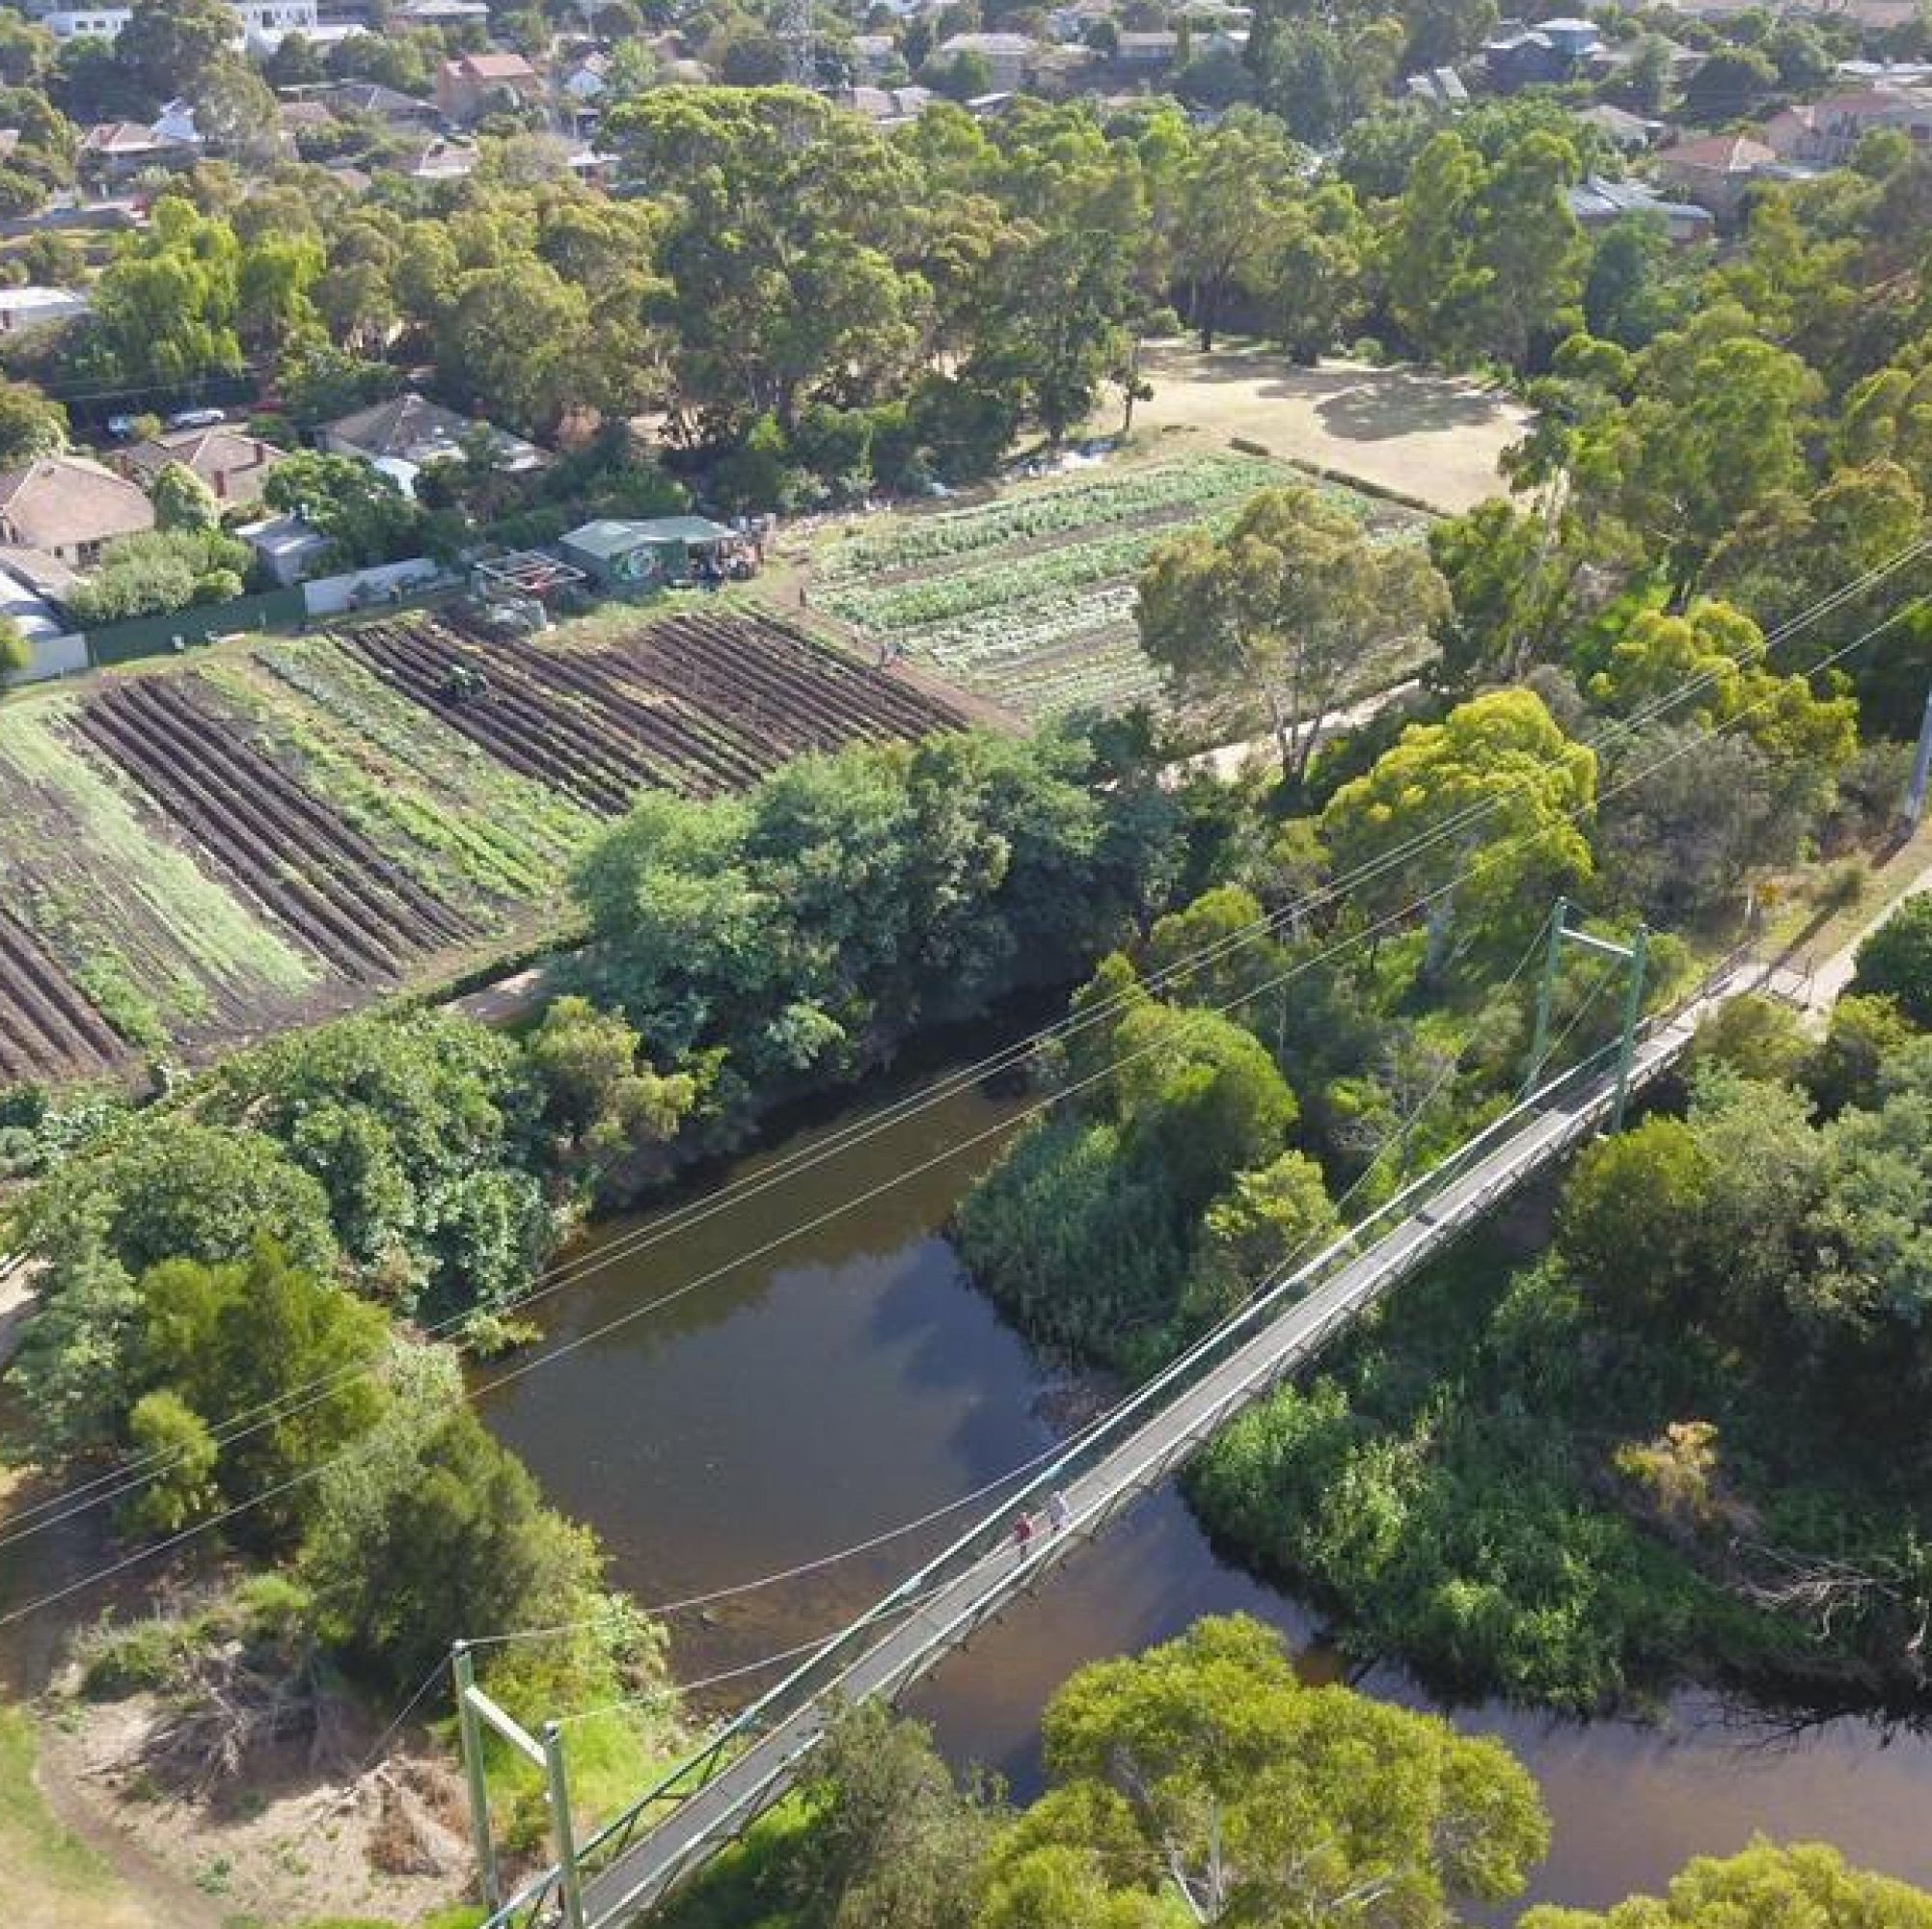 Aerial image of Joe's Garden, Coburg